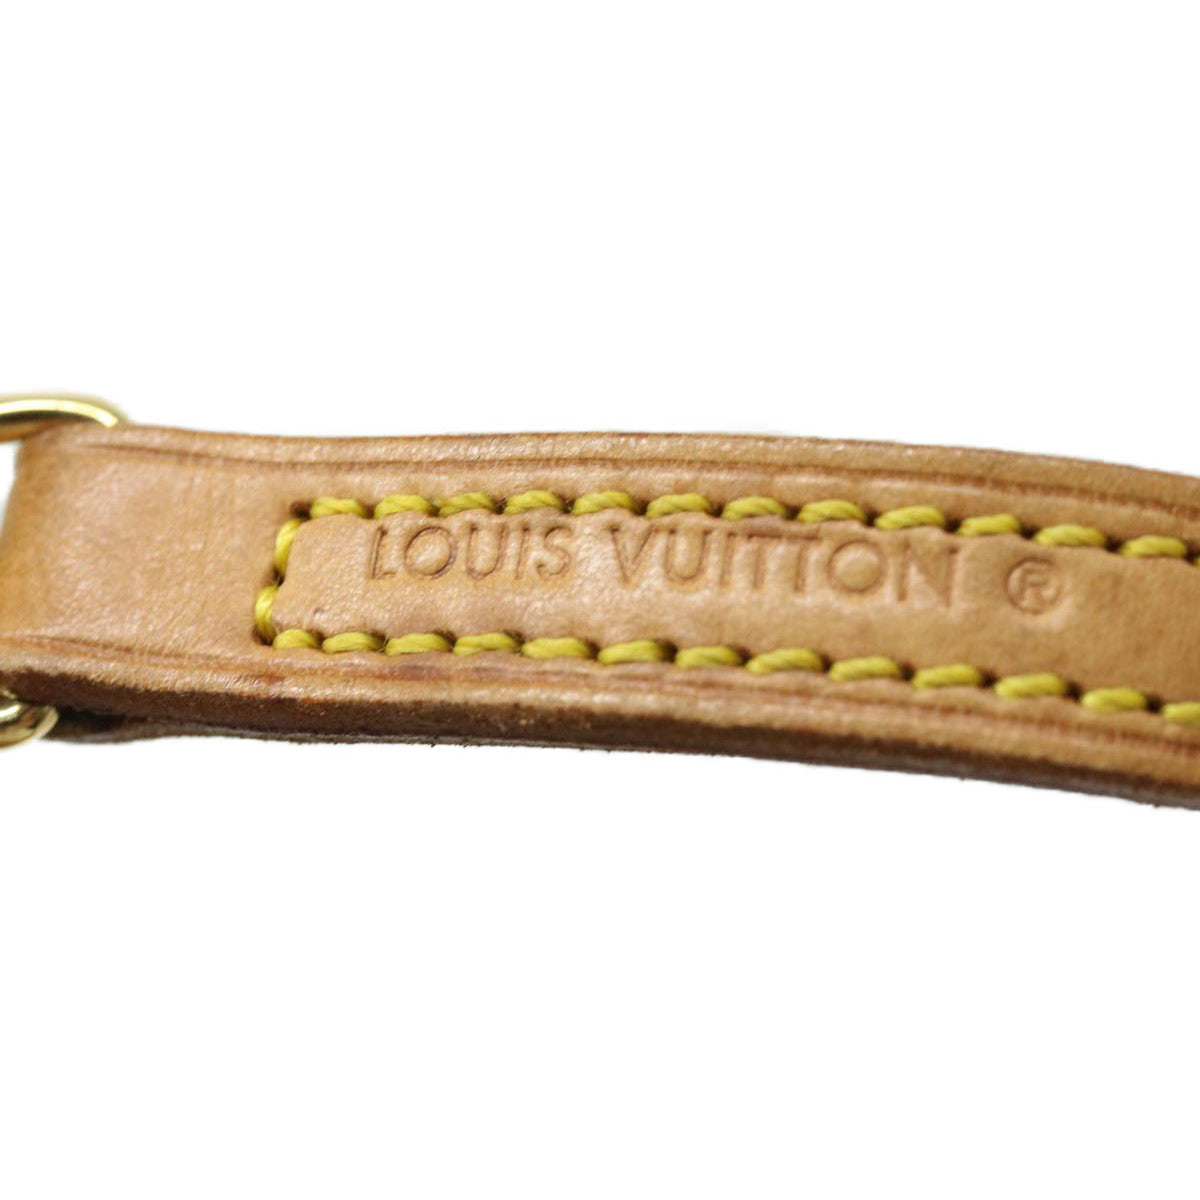 LOUIS VUITTON Shoulder Strap Leather 45.3"" Beige LV Auth bs1901